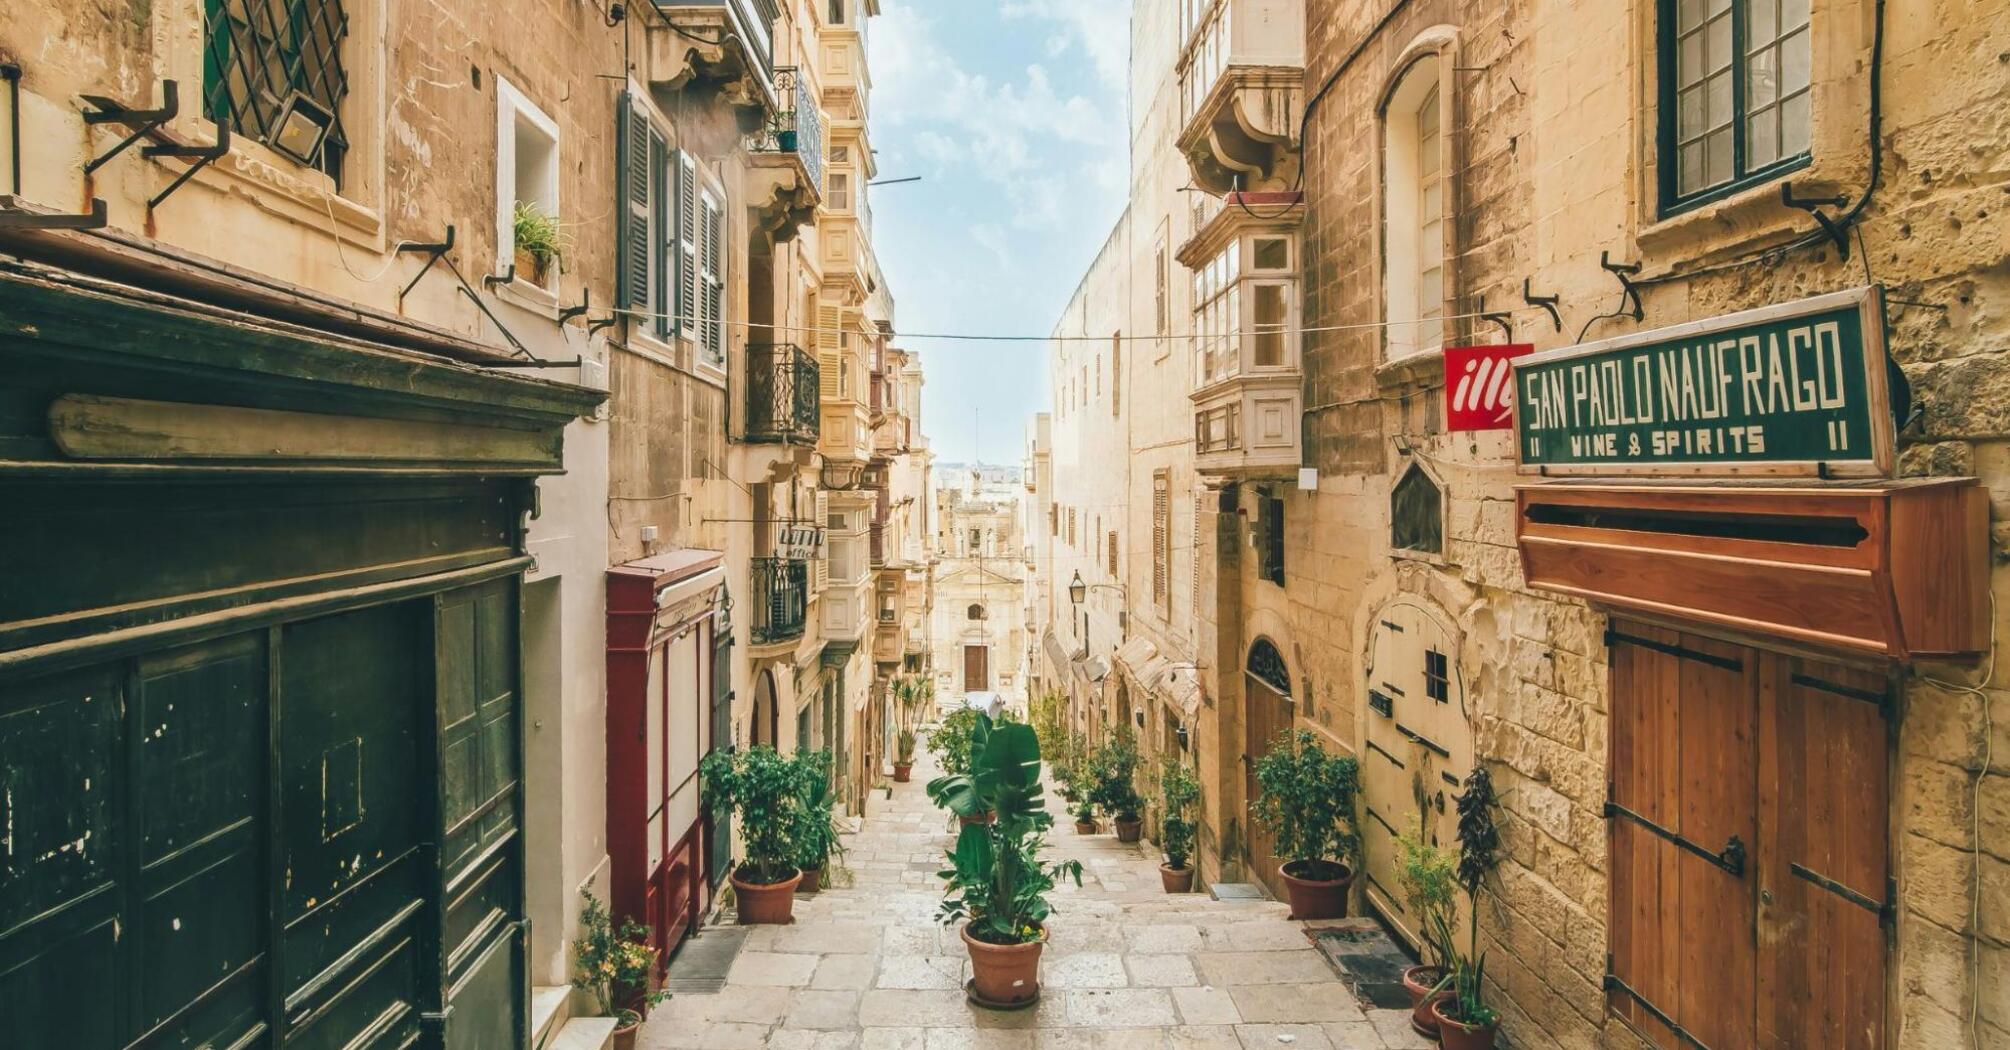 Sunday morning in Valetta, Malta